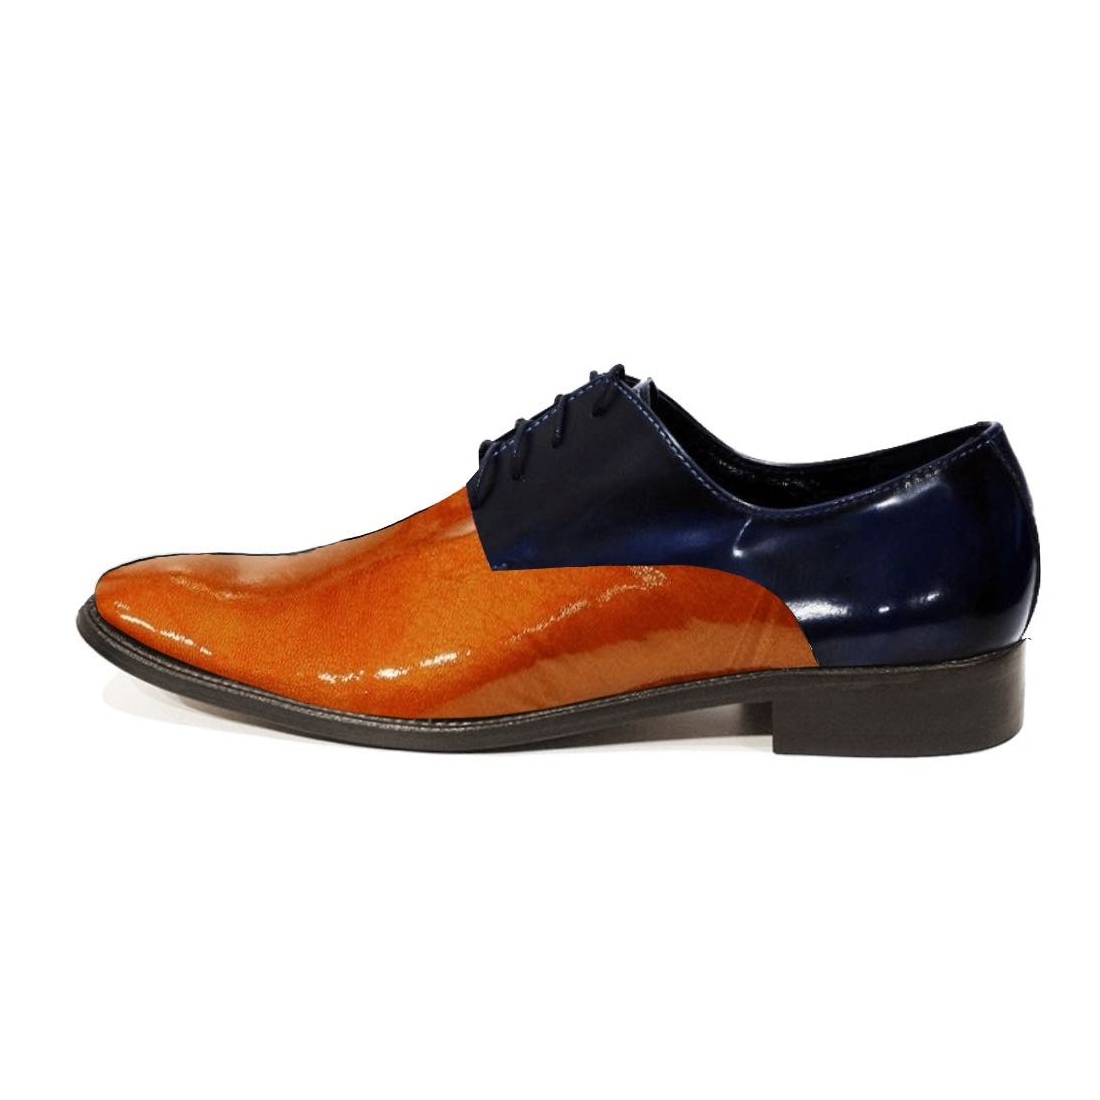 Modello Porellgo - Scarpe Classiche - Handmade Colorful Italian Leather Shoes